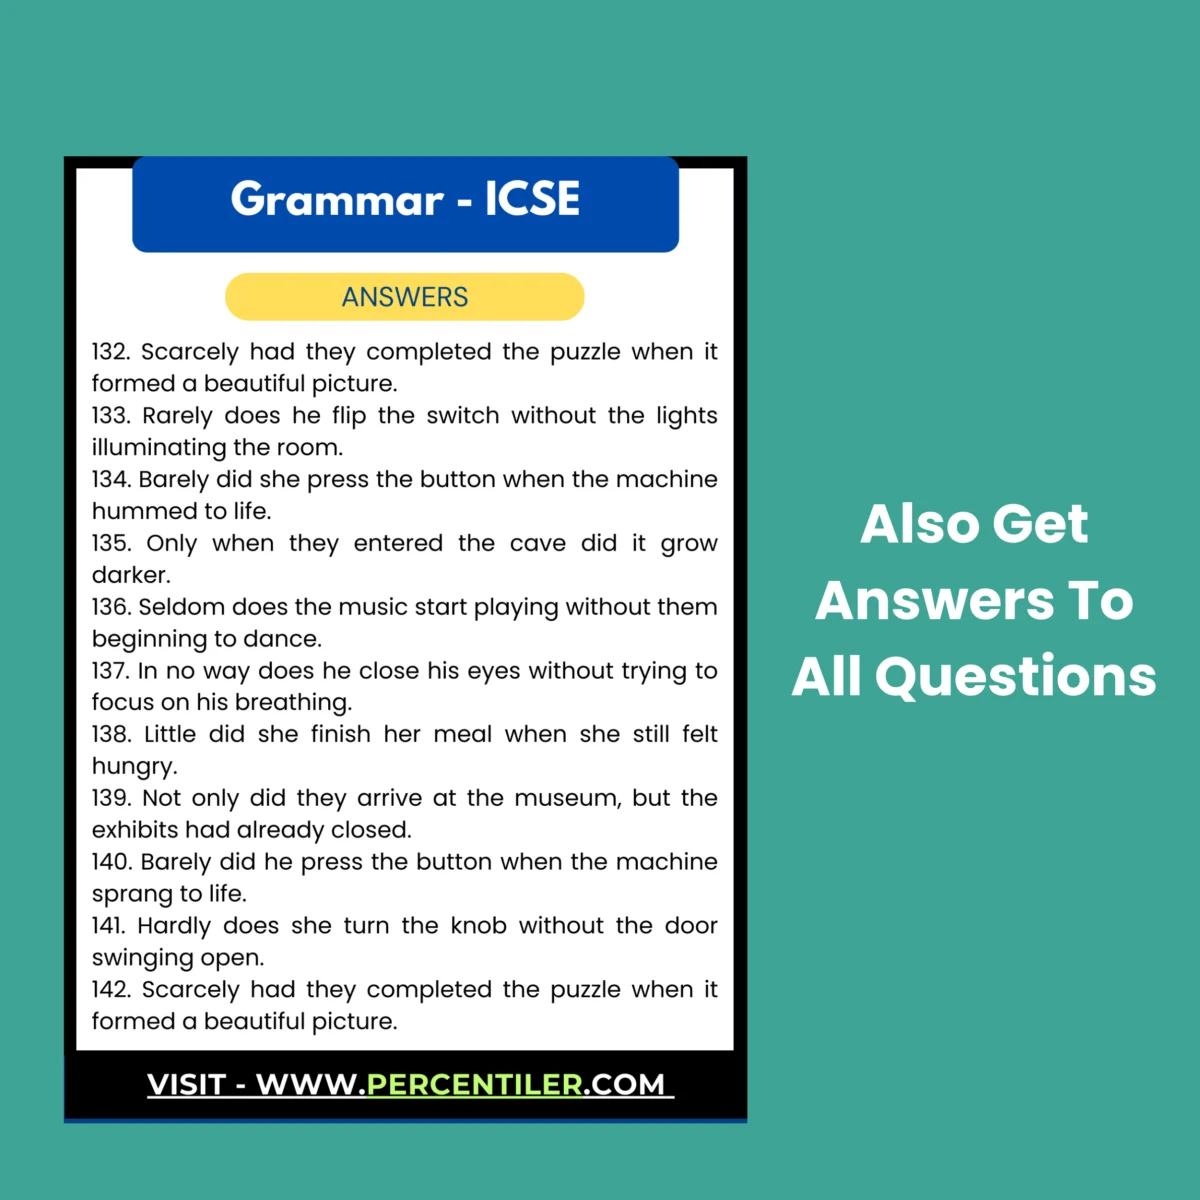 icse grammar questions